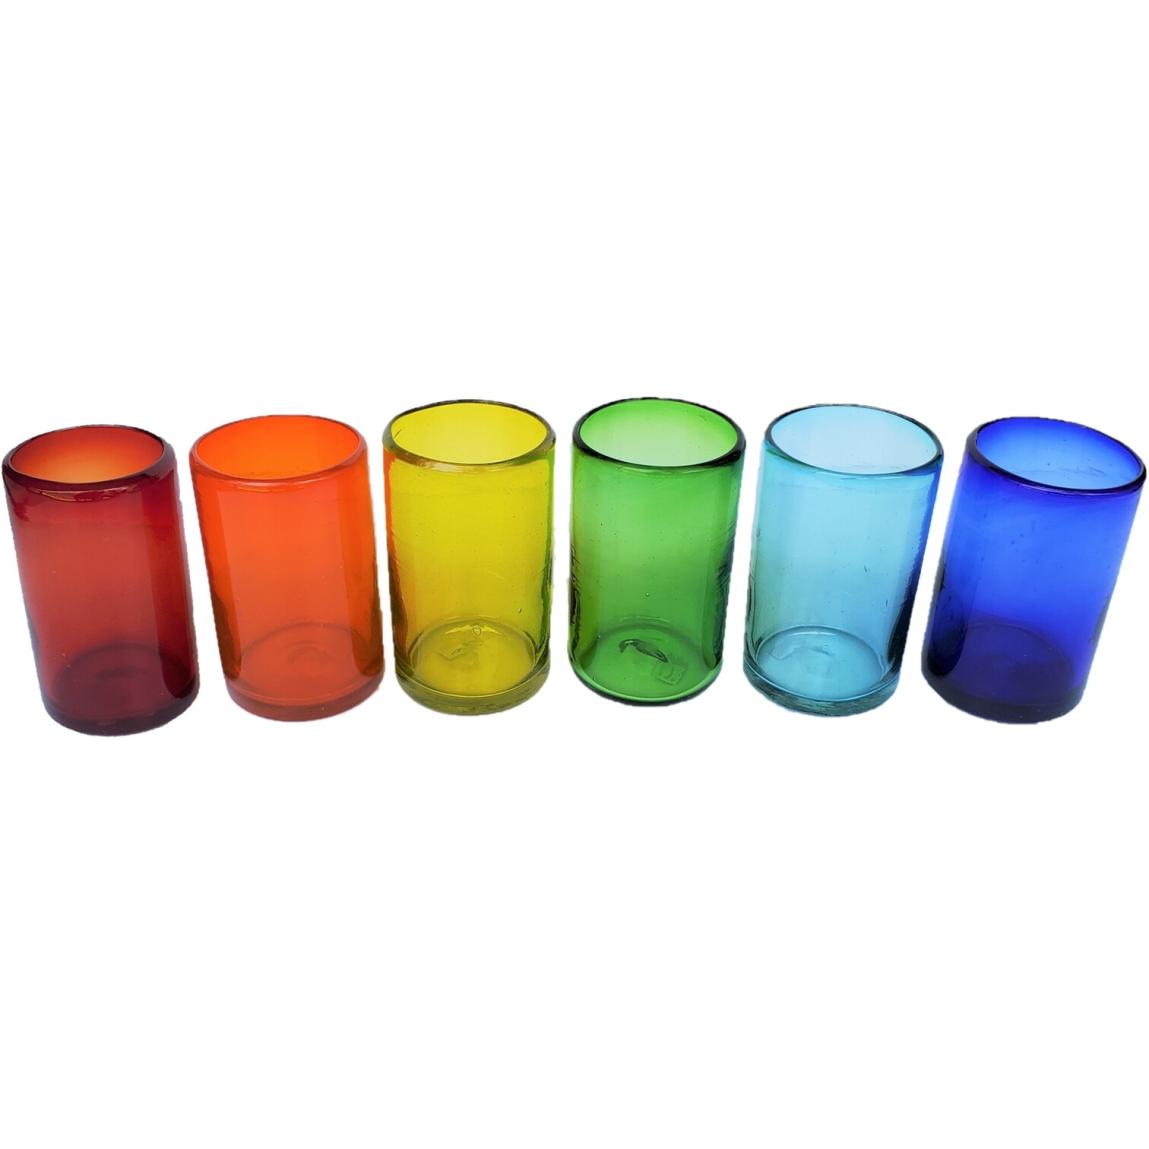 Ofertas / vasos grandes de colores Arcoris / stos artesanales vasos le darn un toque clsico a su bebida favorita.